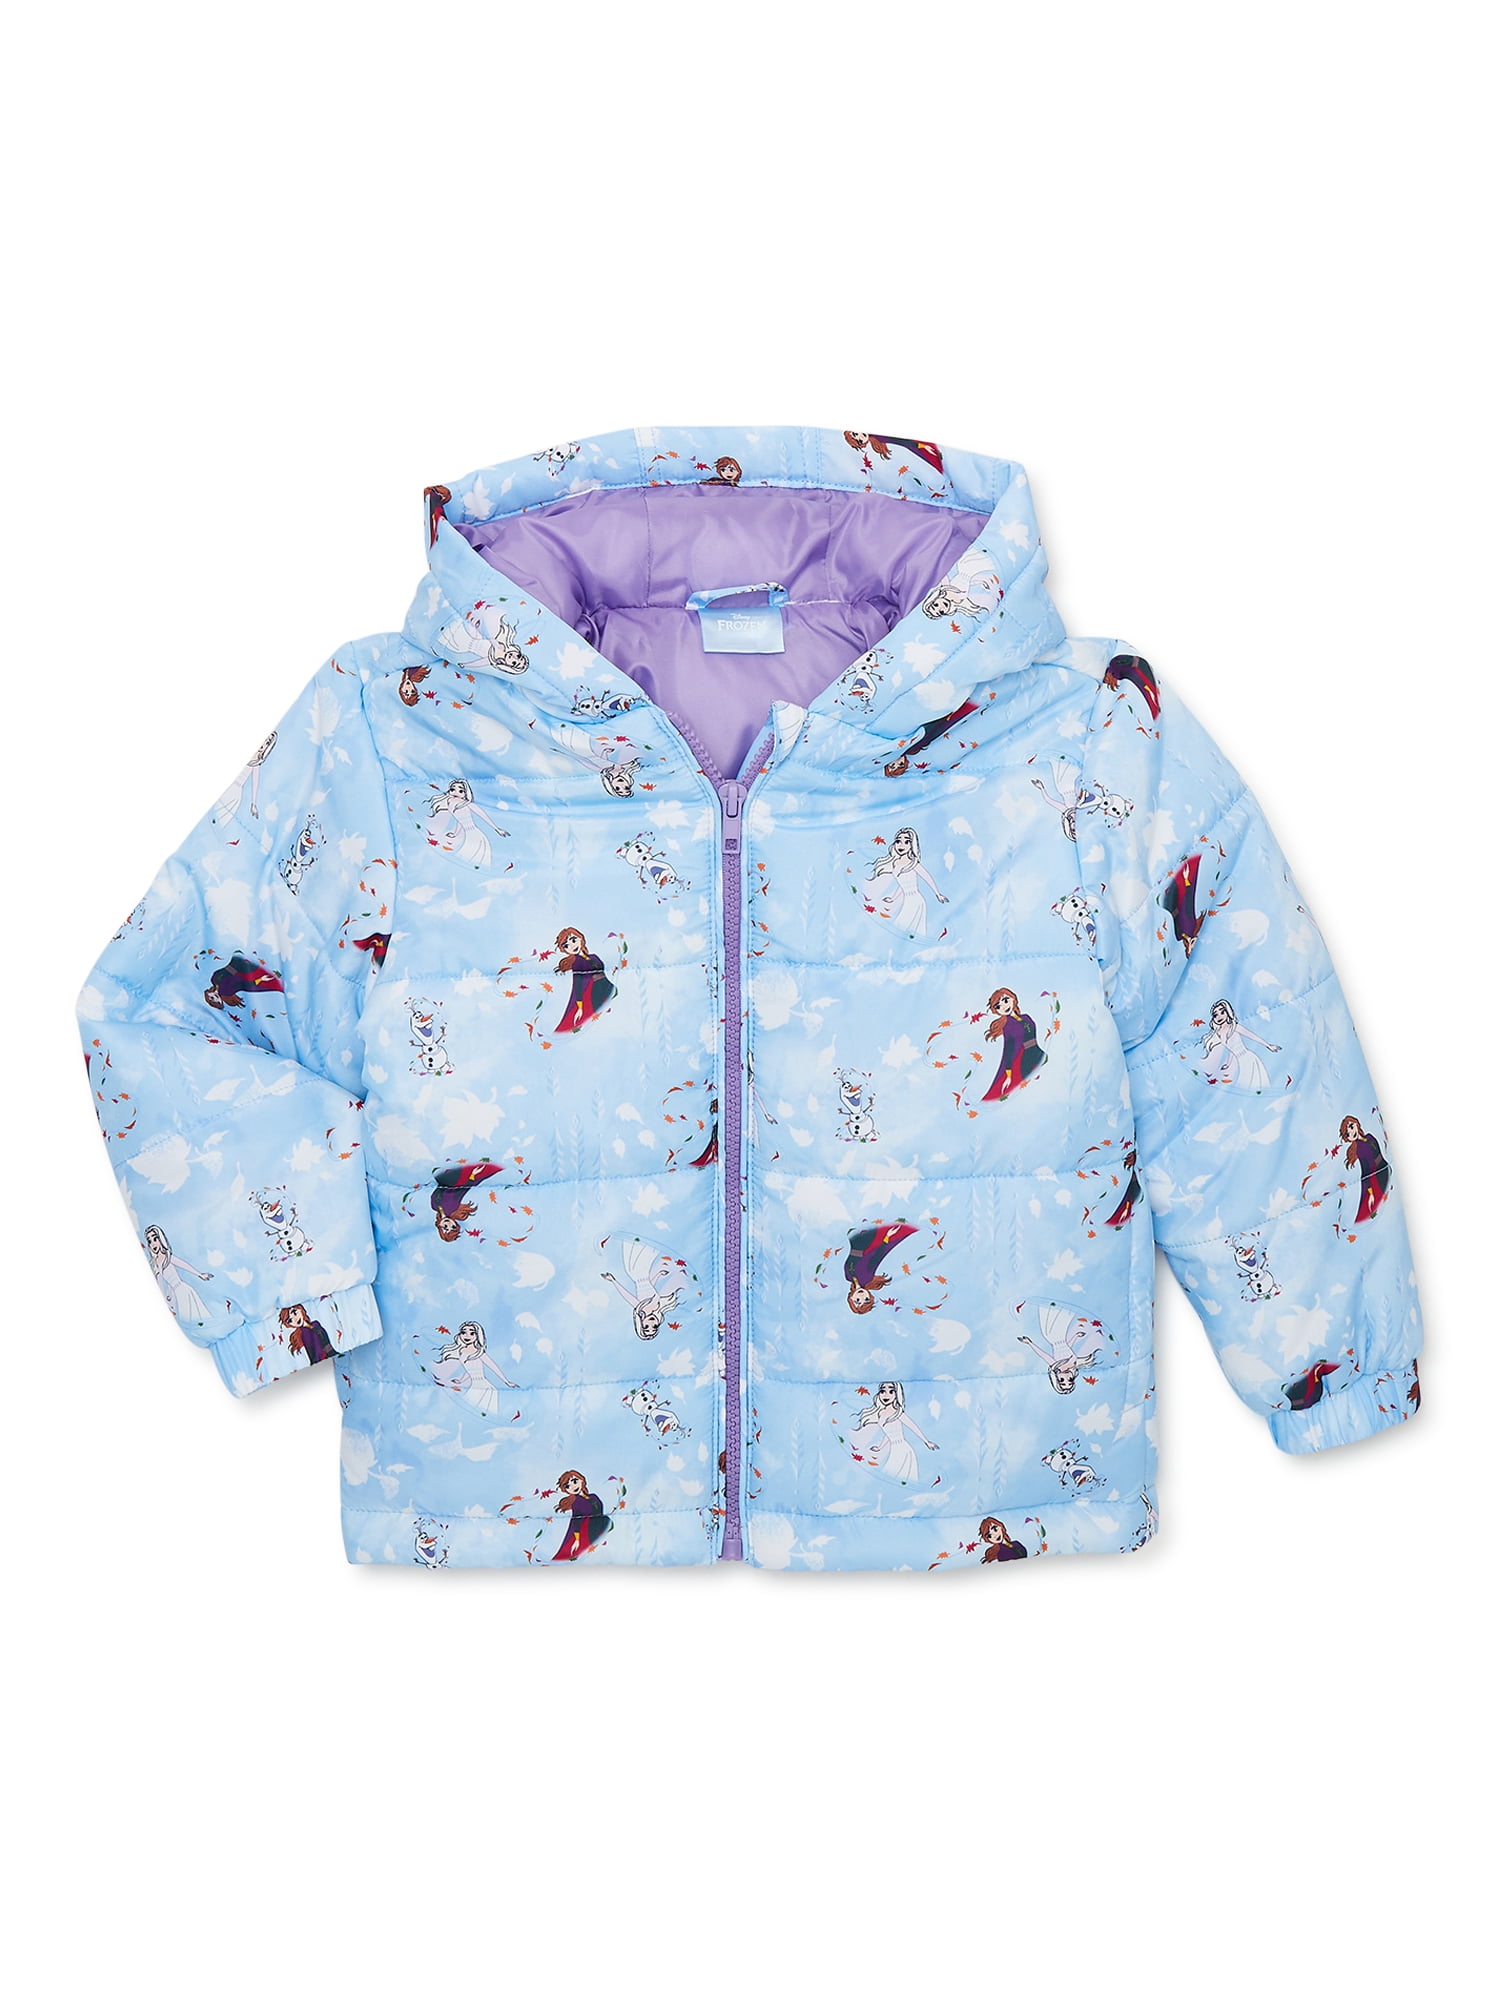 Patterned Fleece Jacket - Light blue/Frozen - Kids